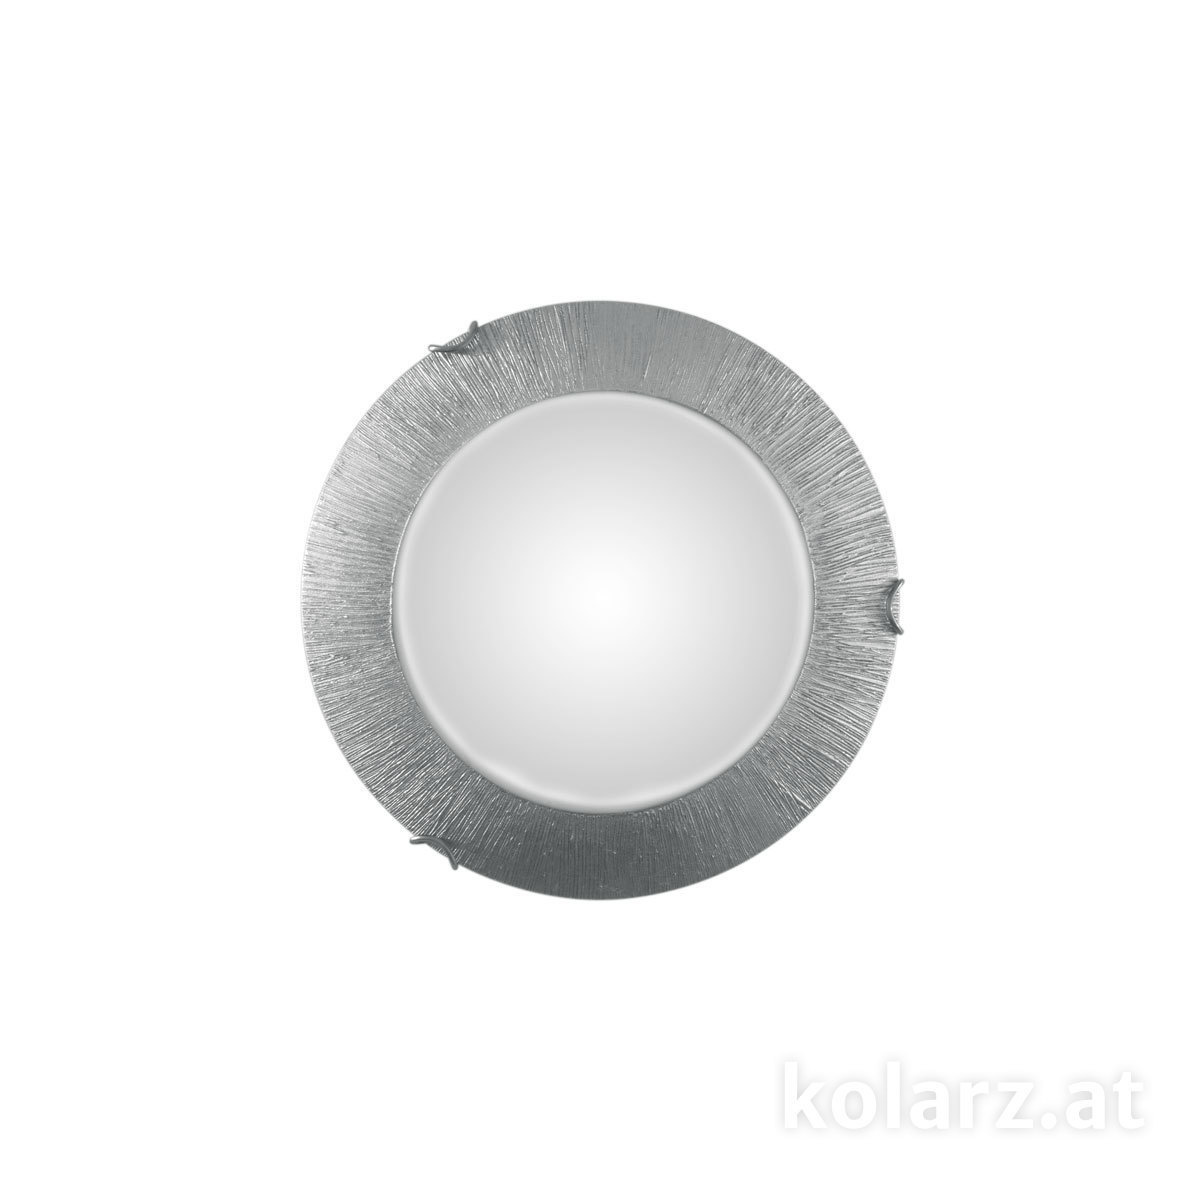 KOLARZ Leuchten Deckenleuchten & Deckenlampen von KOLARZ Leuchten Deckenleuchte MOON LED 30 cm A1306.11LED.5.SunAg